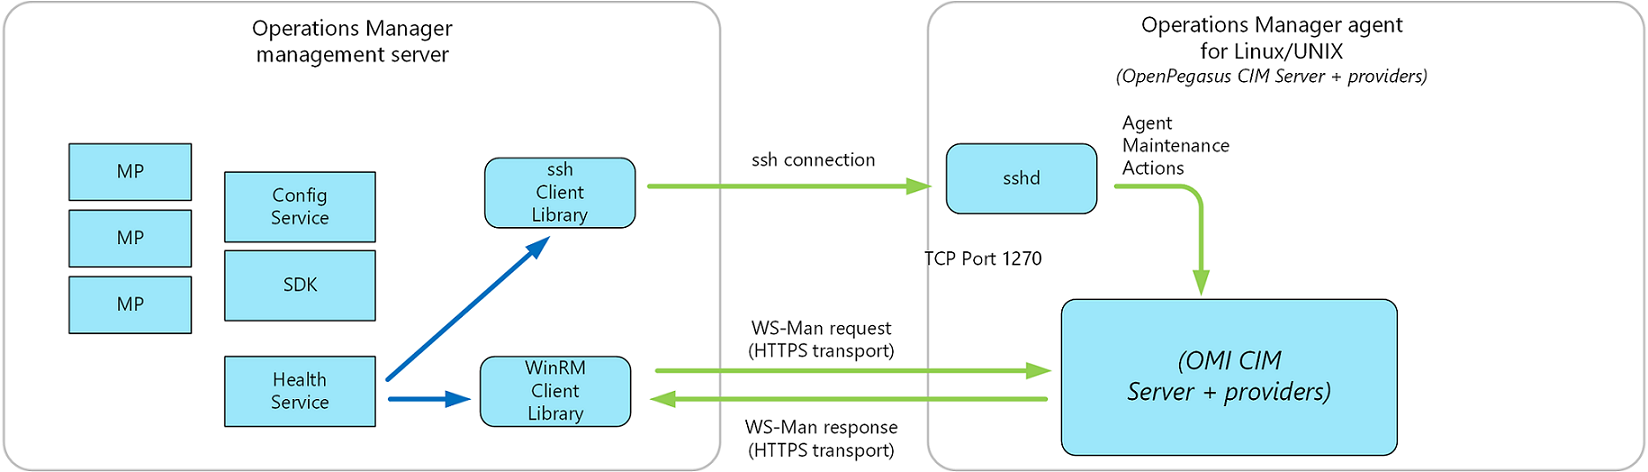 Diagramma dell'architettura software aggiornata dell'agente UNIX/Linux di Operations Manager.